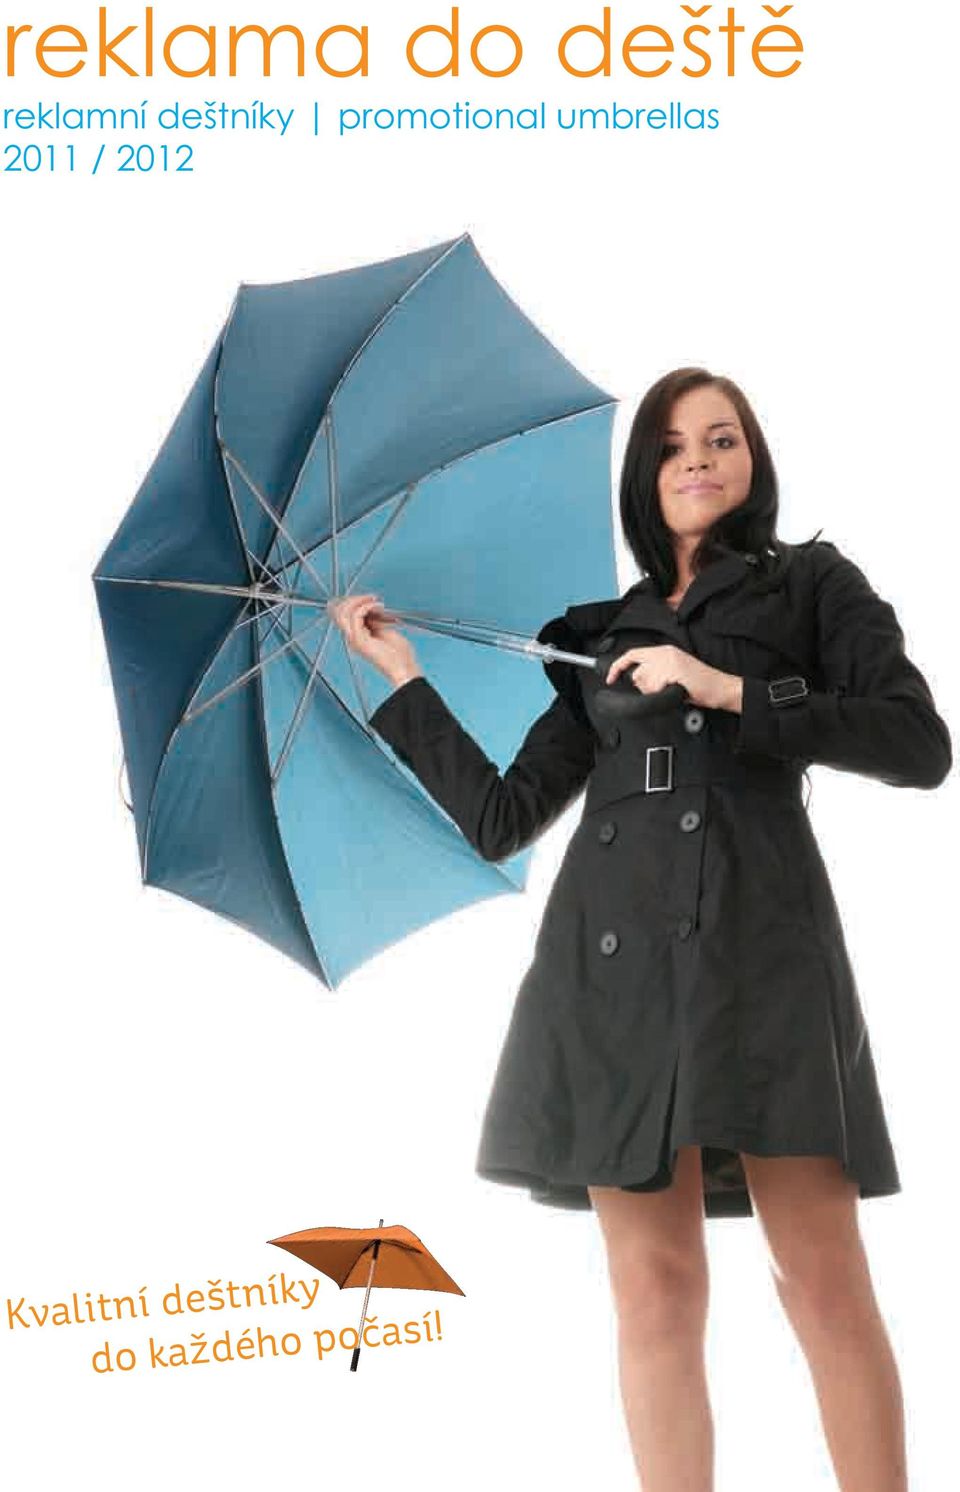 reklama do deště reklamní deštníky promotional umbrellas 2011 / 2012  Kvalitní deštníky do každého počasí! - PDF Free Download